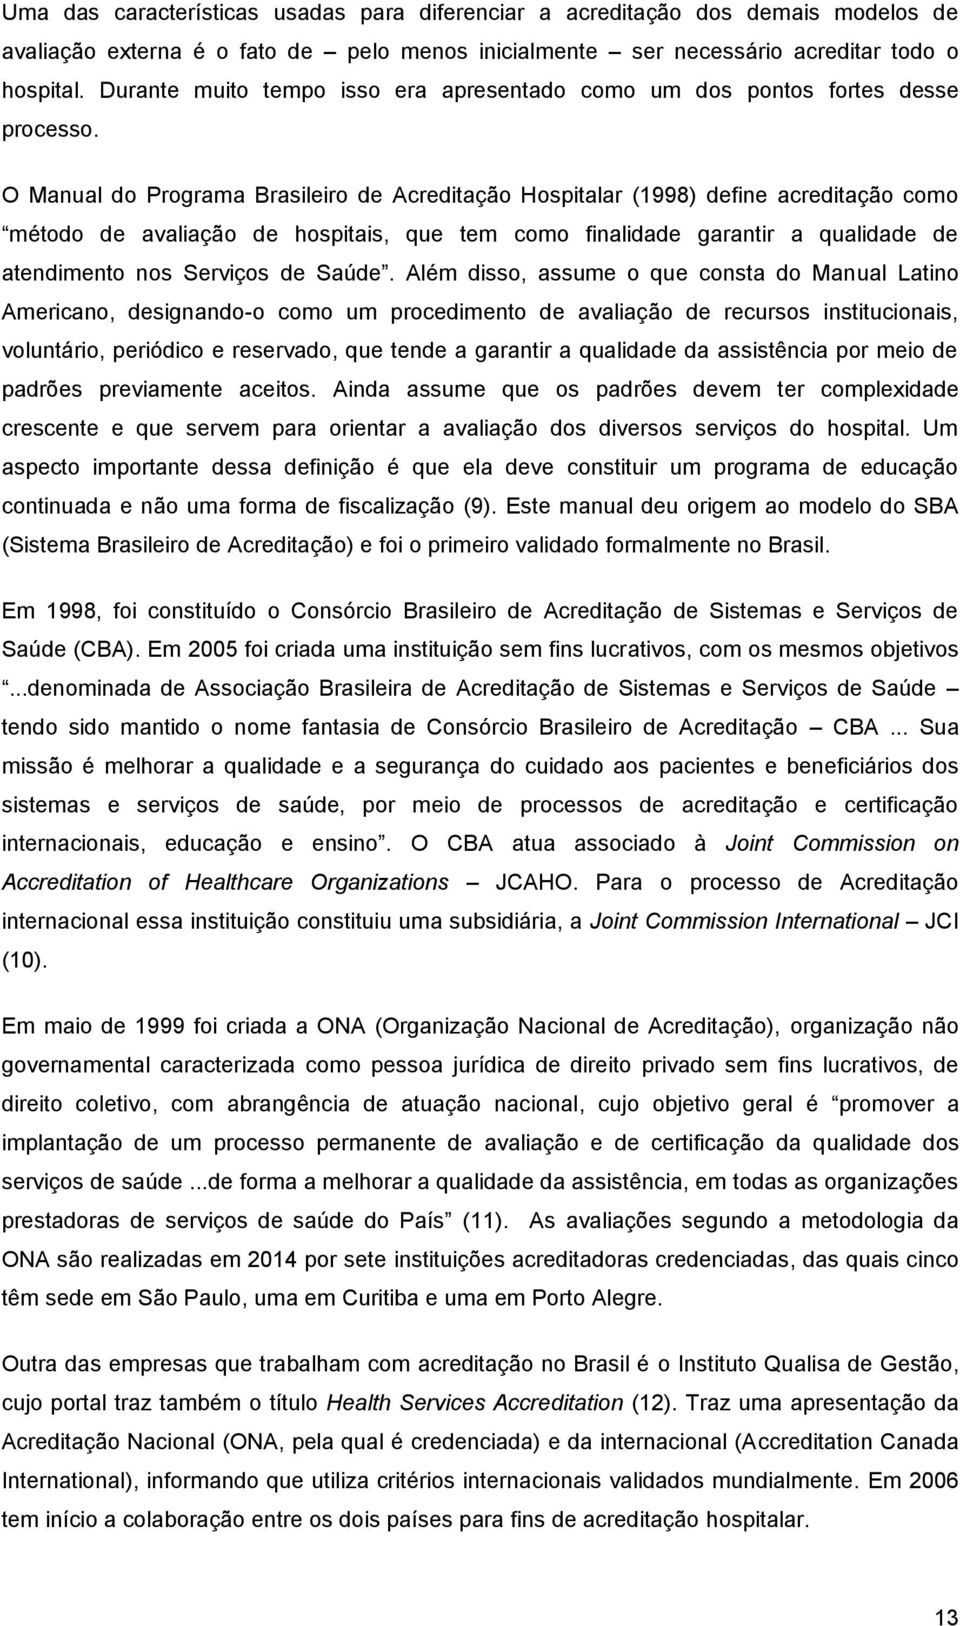 O Manual do Programa Brasileiro de Acreditação Hospitalar (1998) define acreditação como método de avaliação de hospitais, que tem como finalidade garantir a qualidade de atendimento nos Serviços de